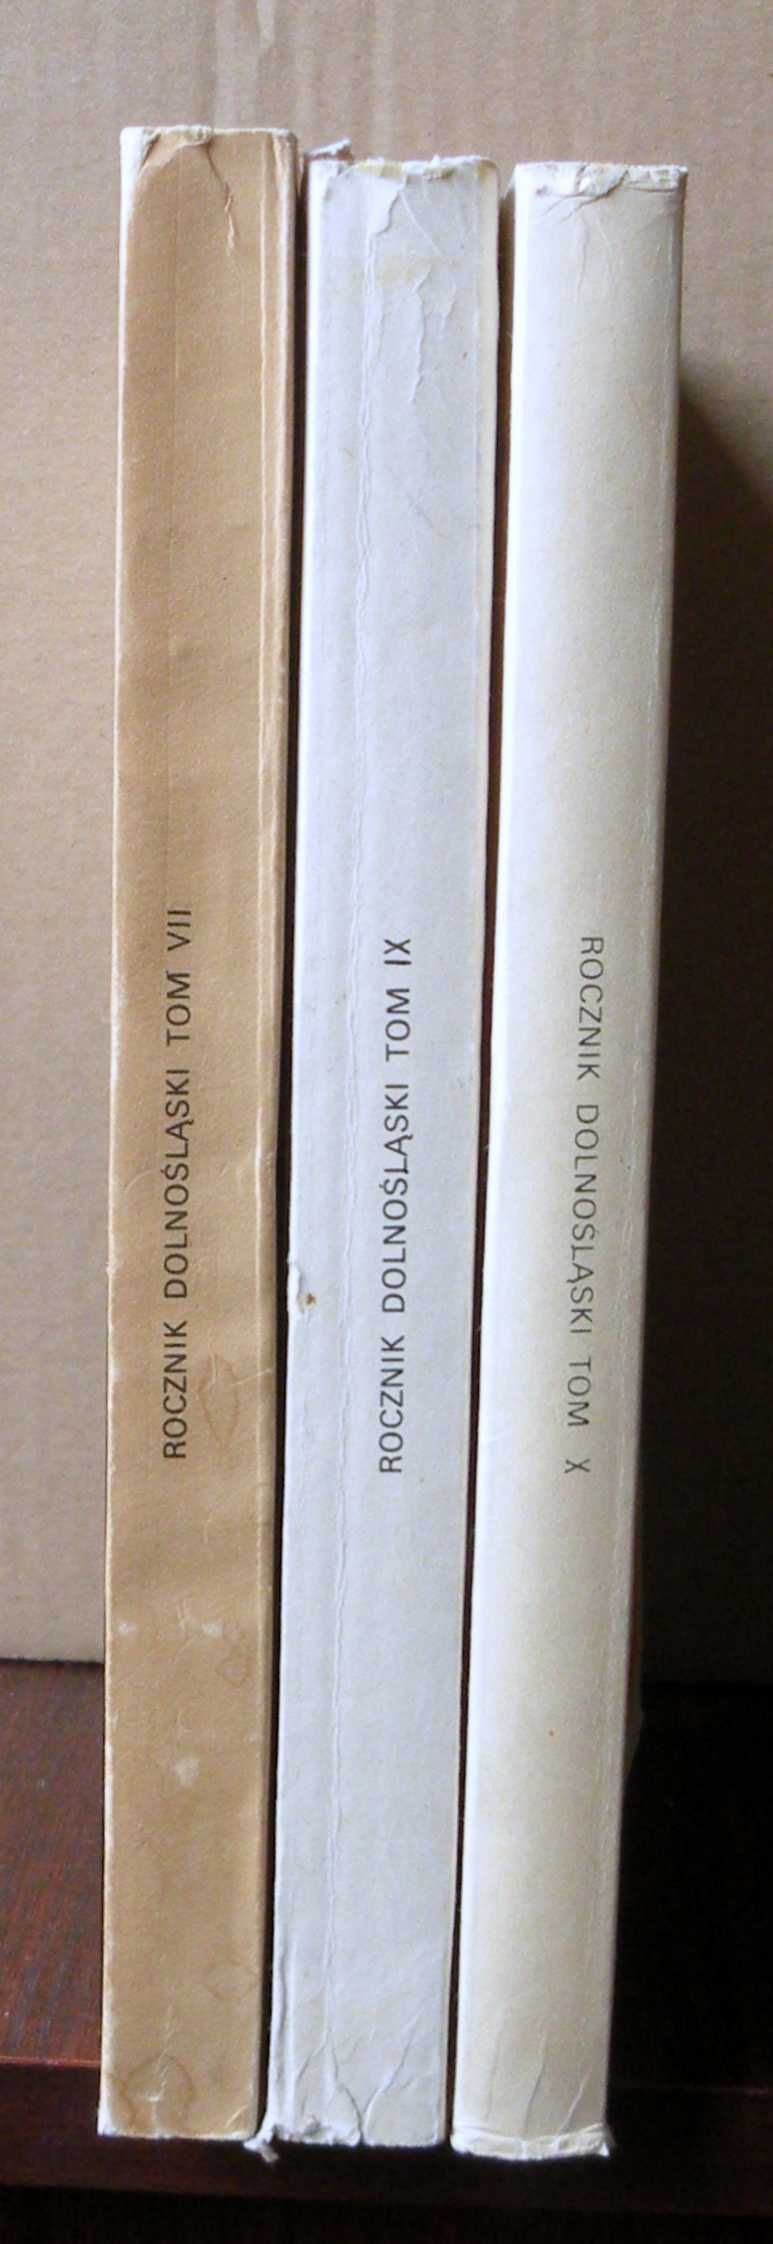 Rocznik Dolnośląski, 3 tomy, T. VII (1980), IX (1985), X (1987)